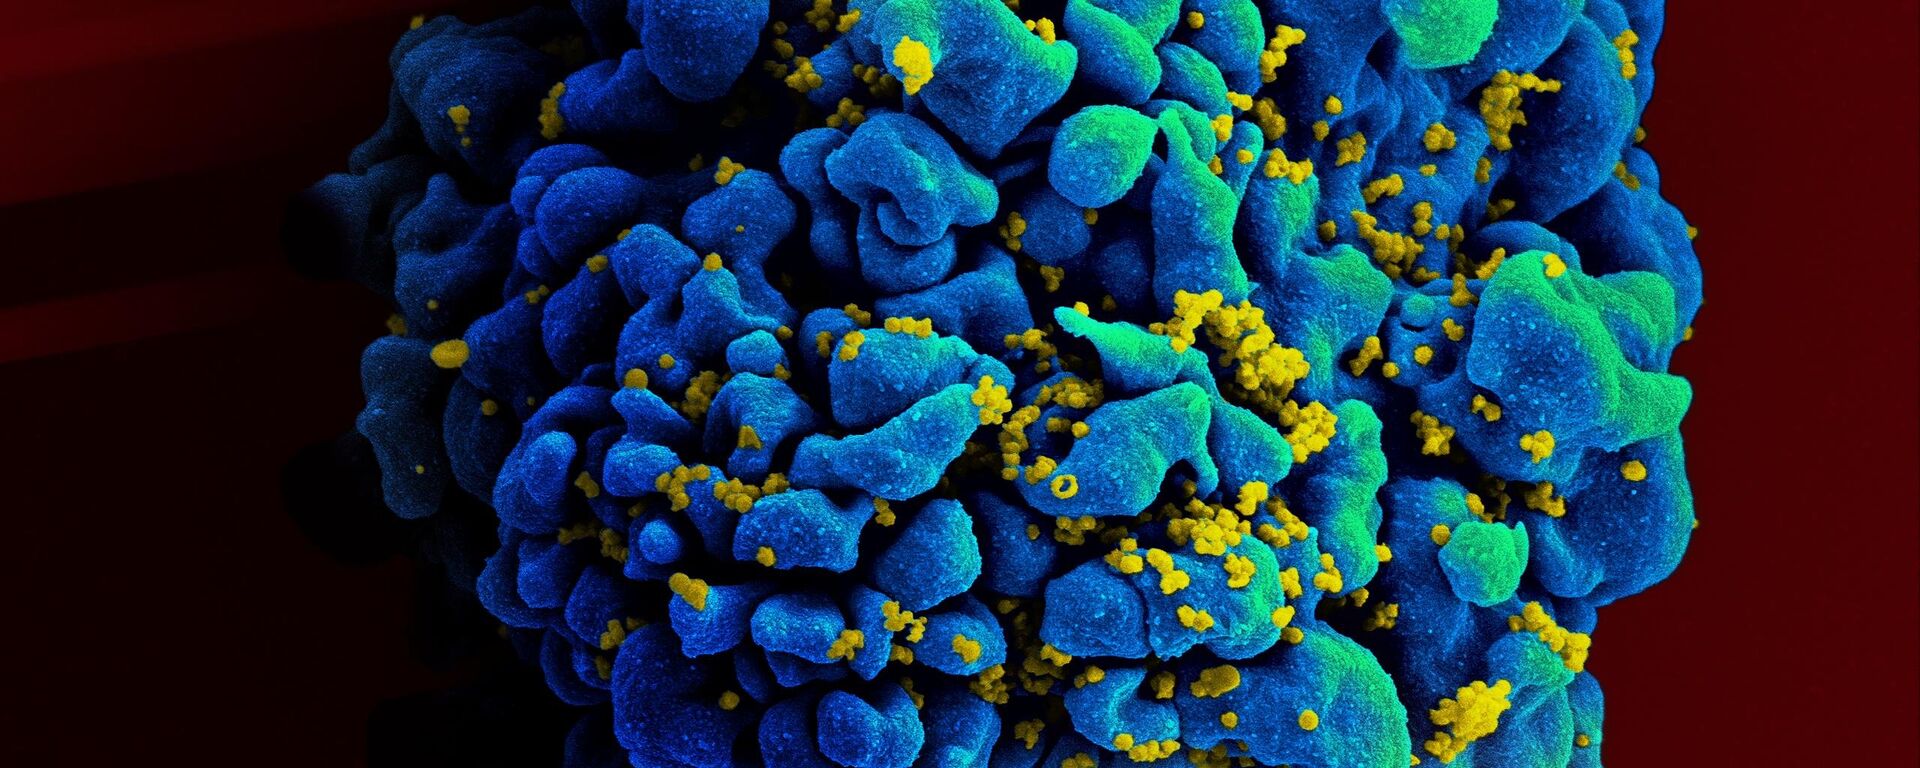 Una célula T atacada por el virus del VIH - Sputnik Mundo, 1920, 05.08.2021